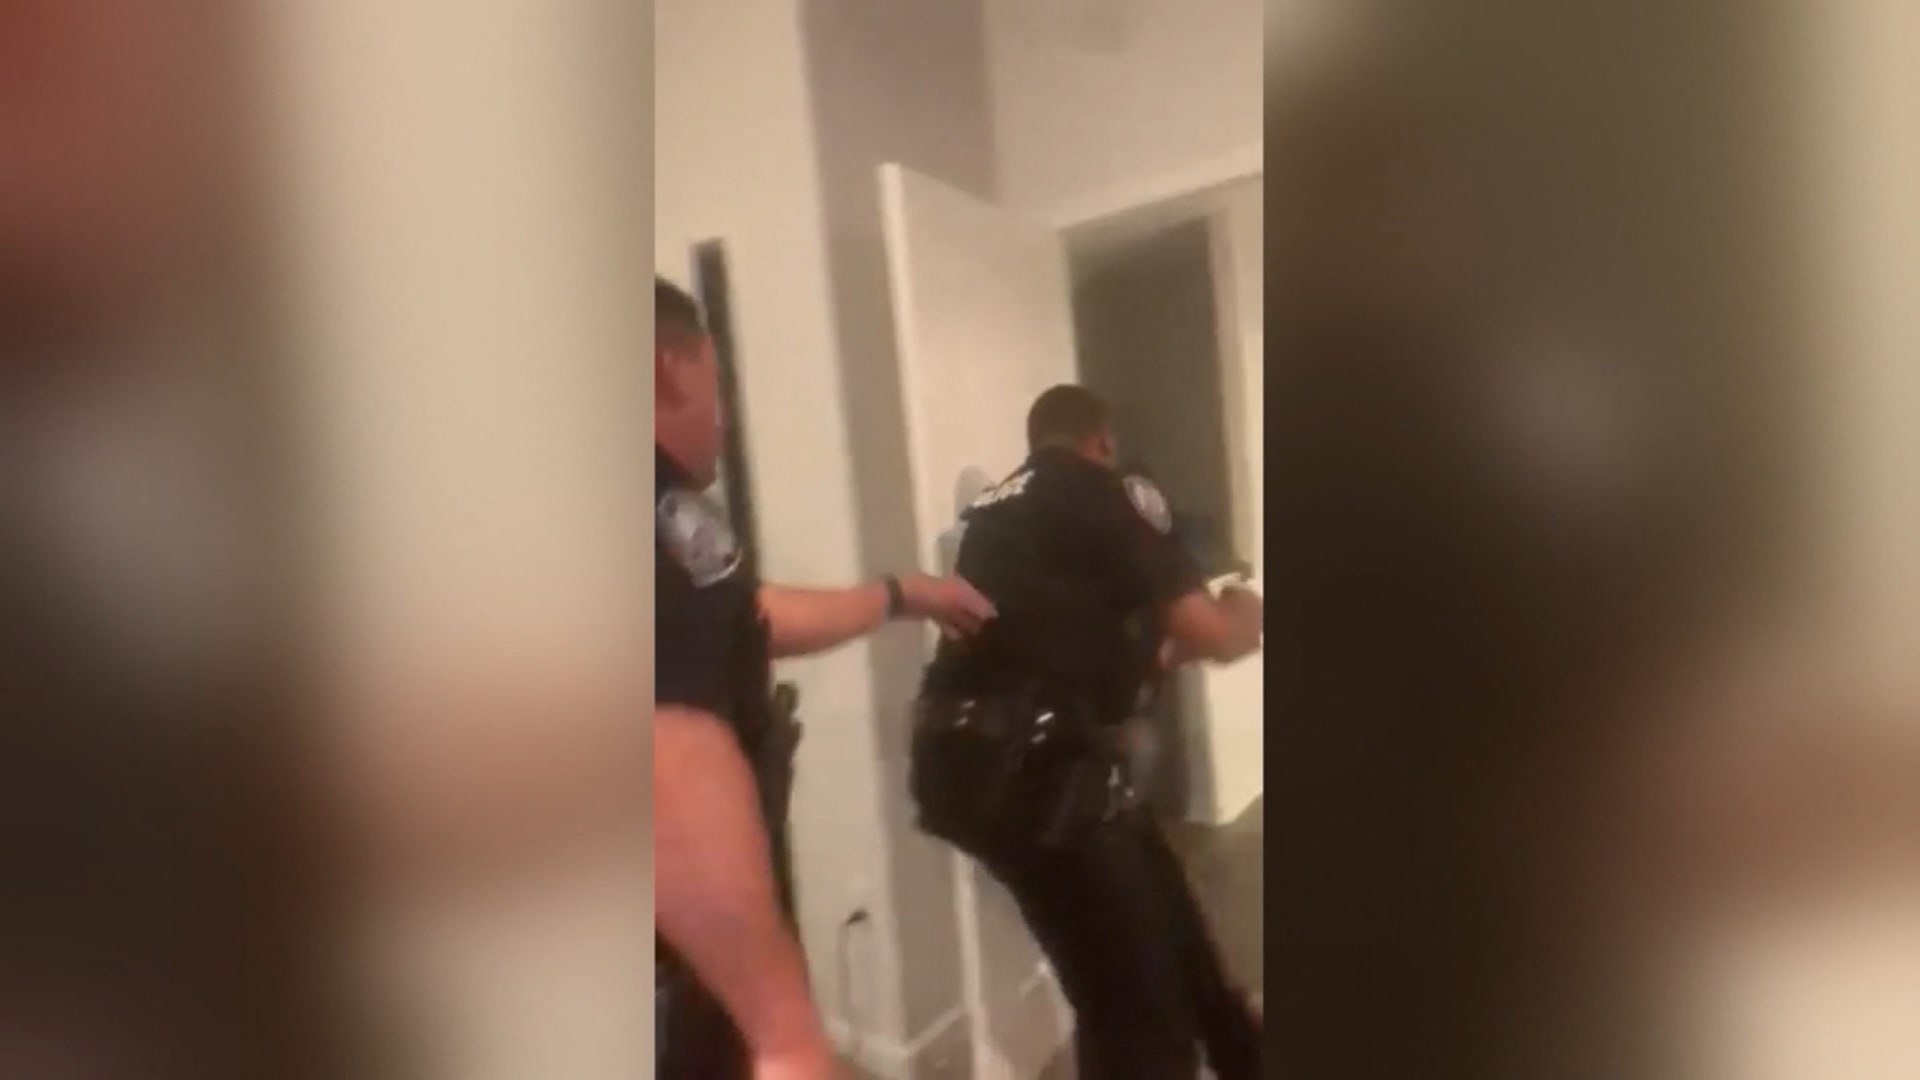 بسبب مخالفة مرورية.. فيديو يُظهر الشرطة الأمريكية تقوم باقتحام منزل وتستخدم القوة المفرطة في اعتقال رجل بالداخل